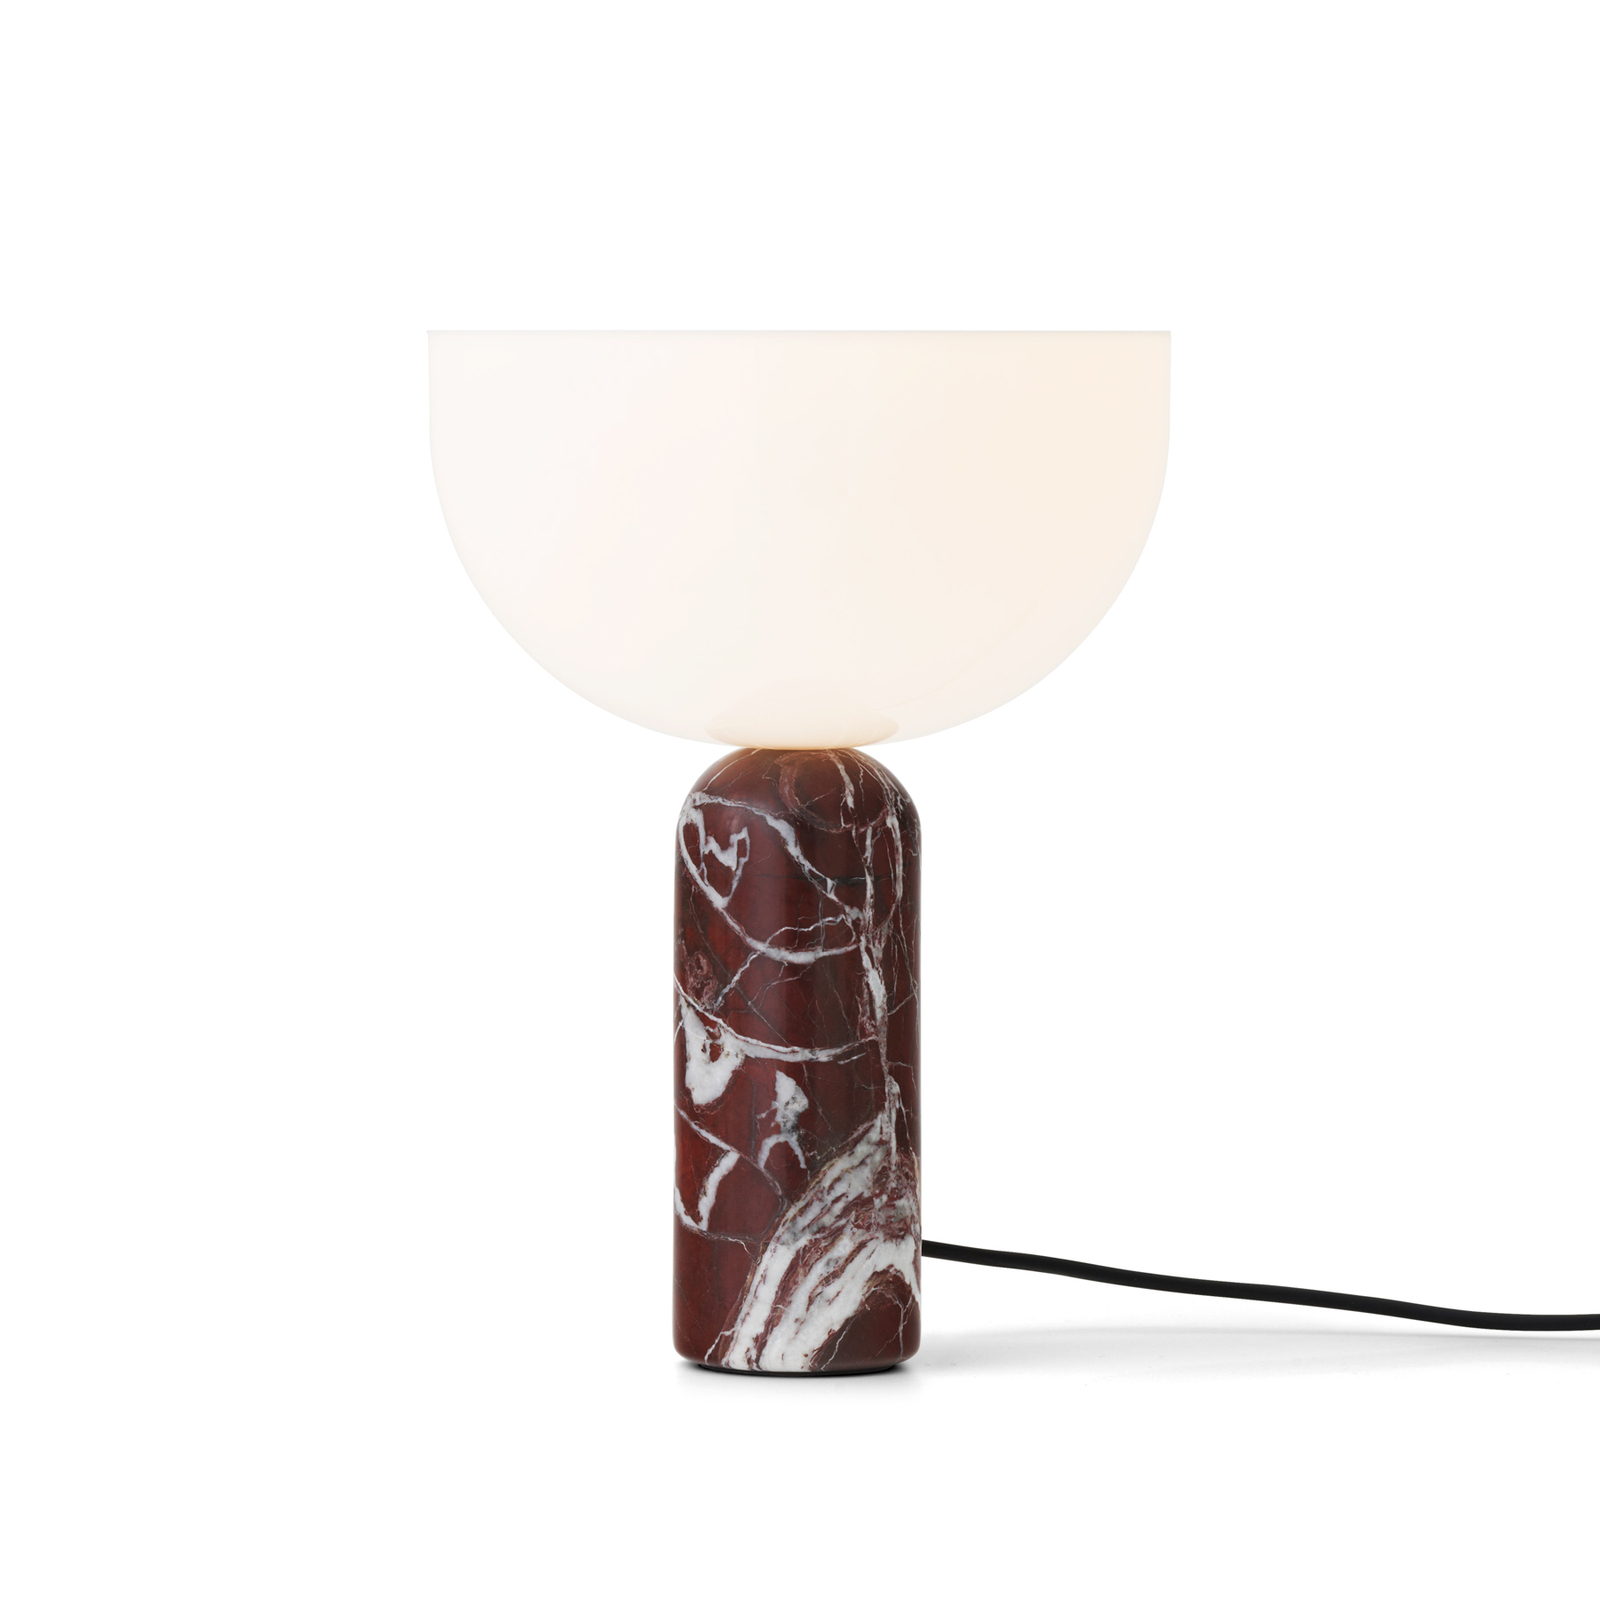 New Works Kizu Small lámpara de mesa Rosso Levanto